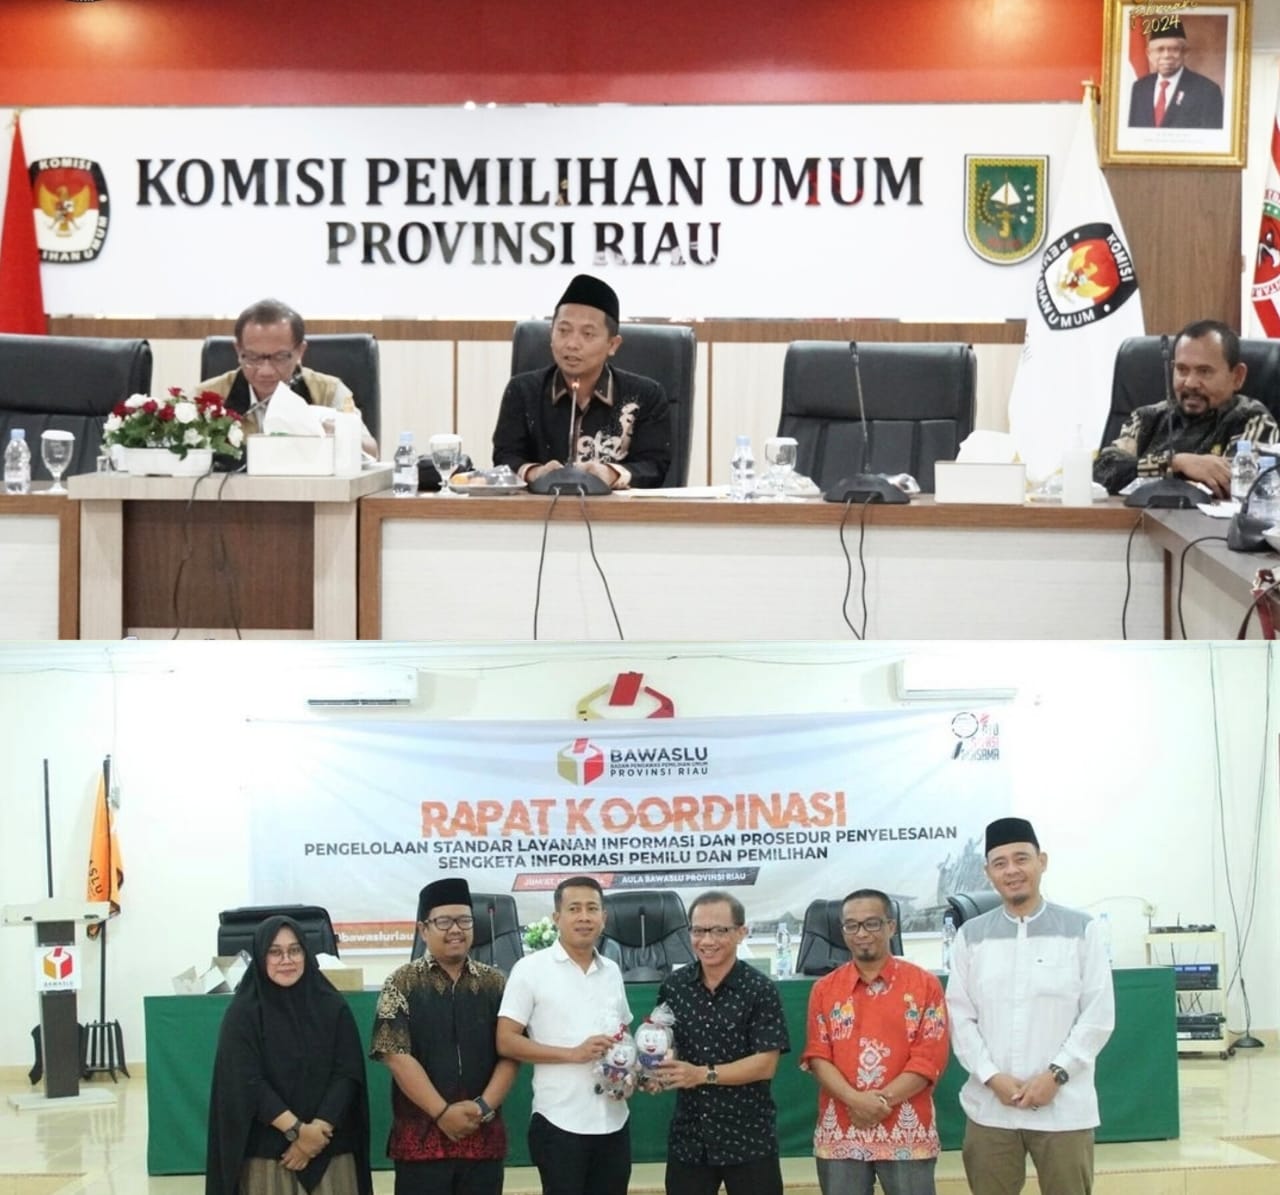 Kunjungi KPU, Bawaslu dan Parpol di Riau, Komisioner KI: Ini Bukan Bentuk Intervensi ke Penyelenggara Pemilu